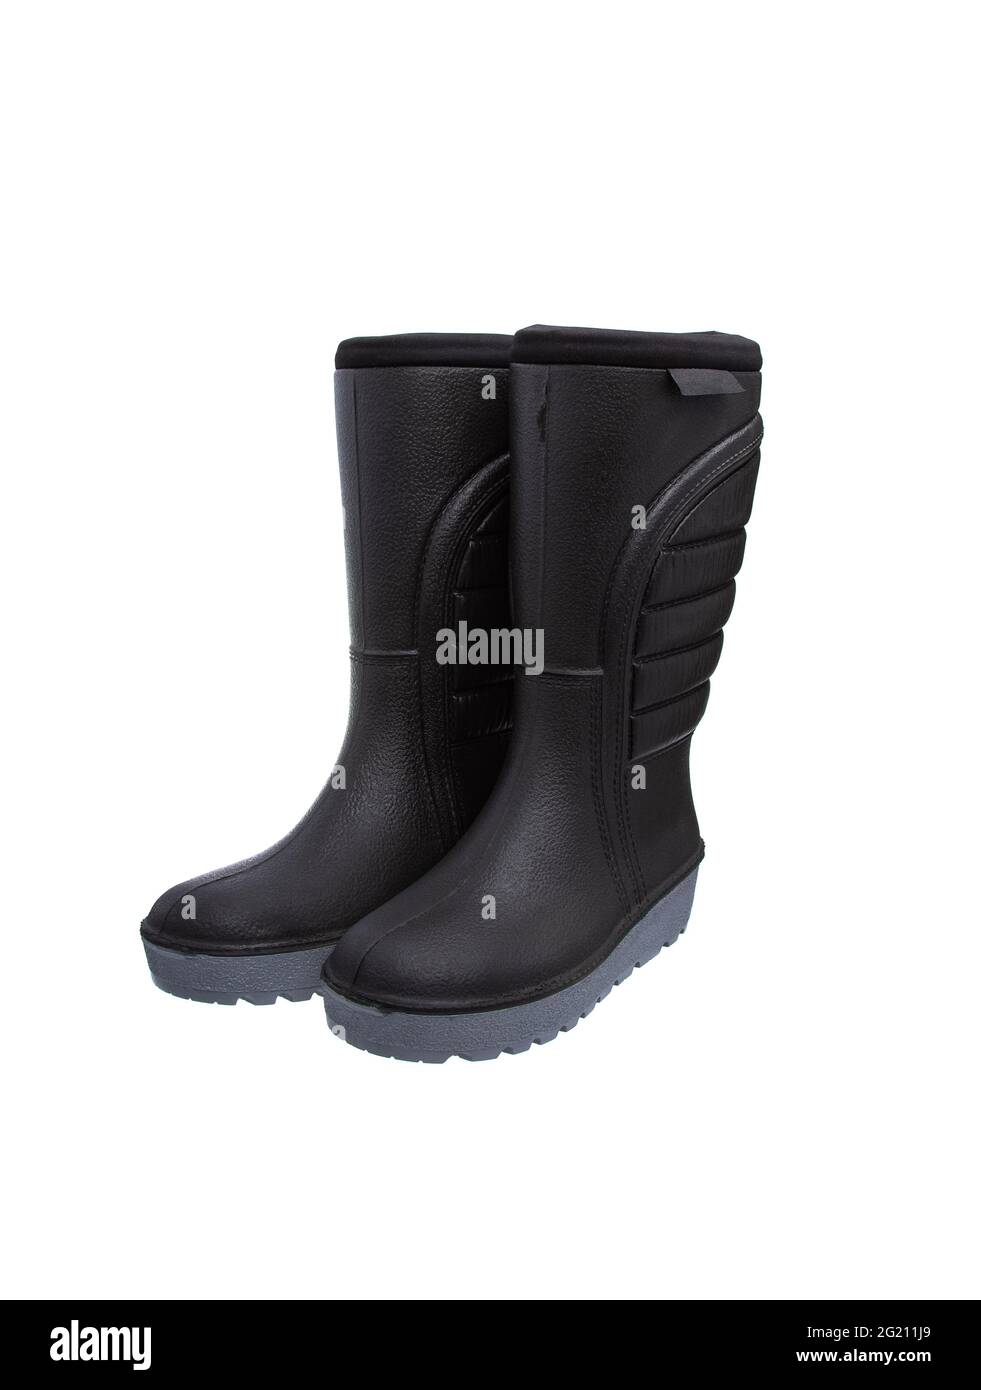 Schuhe für schlechtes Wetter. Warme Gummistiefel mit isolierter  Traktorsohle auf weißem Hintergrund Stockfotografie - Alamy